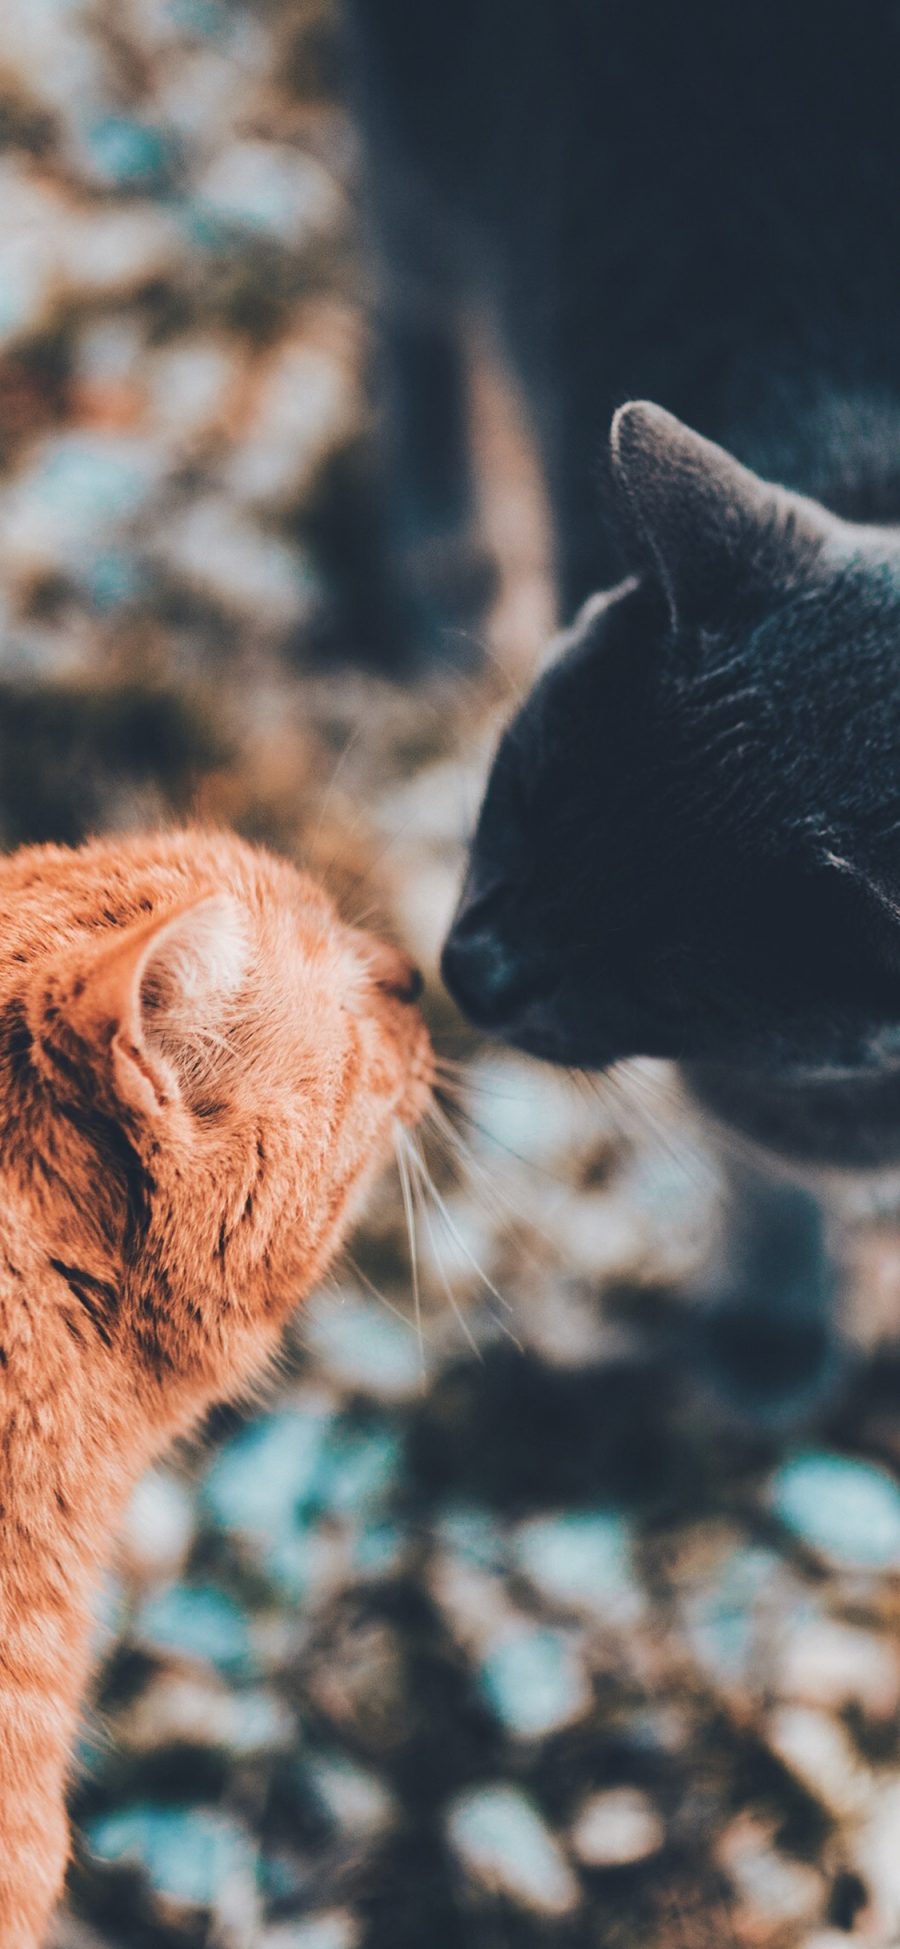 [2436×1125]猫咪 宠物 可爱 亲吻 苹果手机壁纸图片